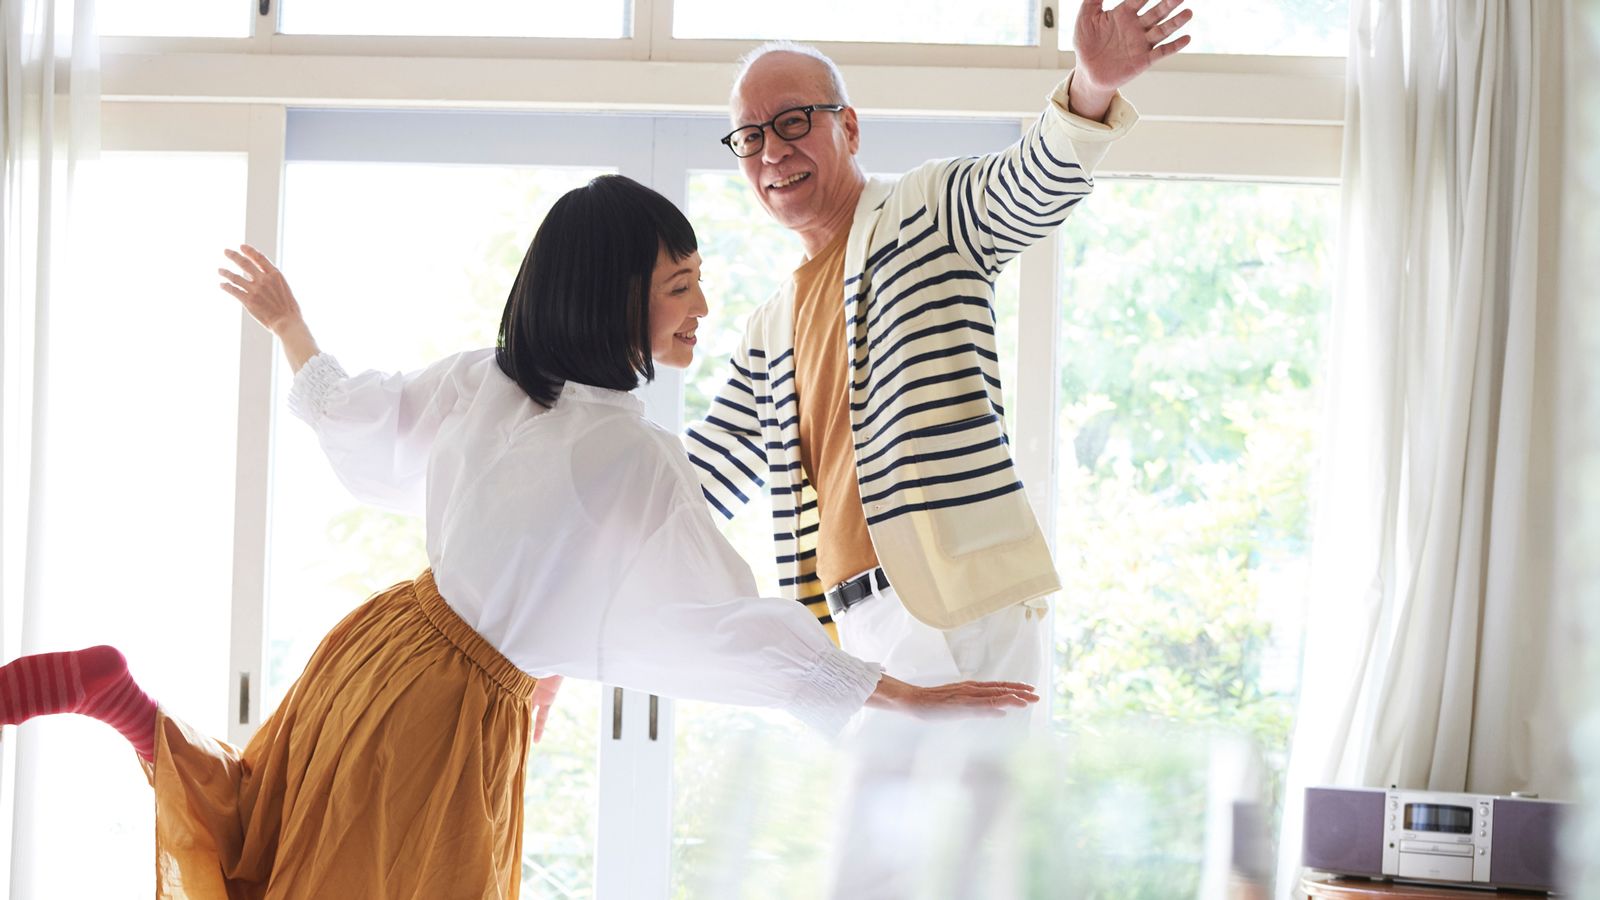 ベストセラー脳科学者が強くダンスを推す理由 ｢ブレイン･ルール｣に見る人生を楽しむ秘訣 | 健康 | 東洋経済オンライン